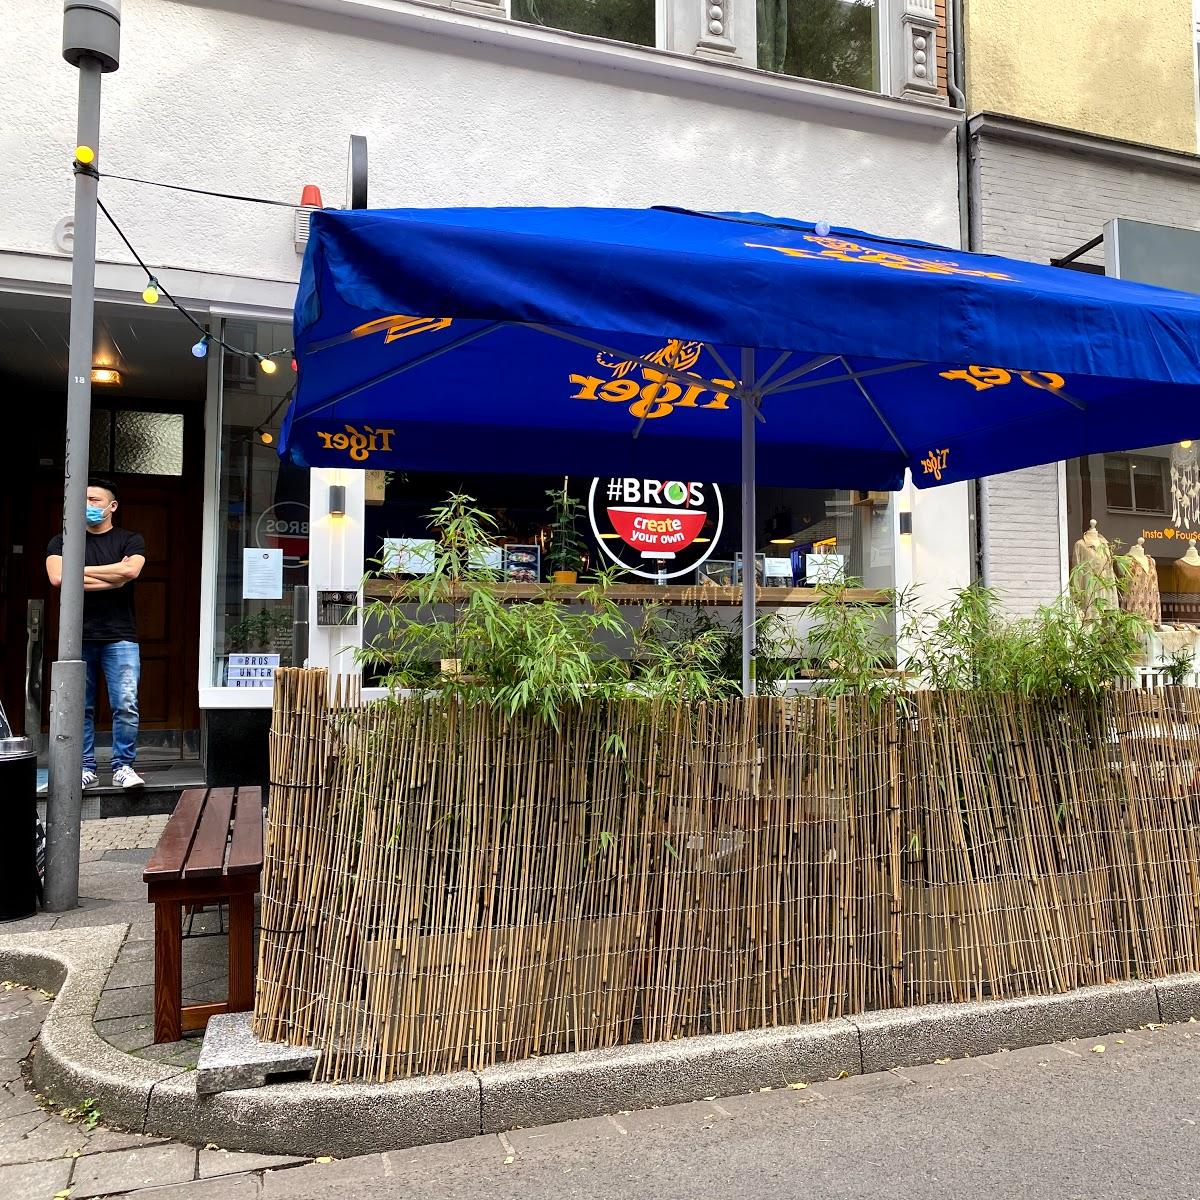 Restaurant "Bros" in Düsseldorf